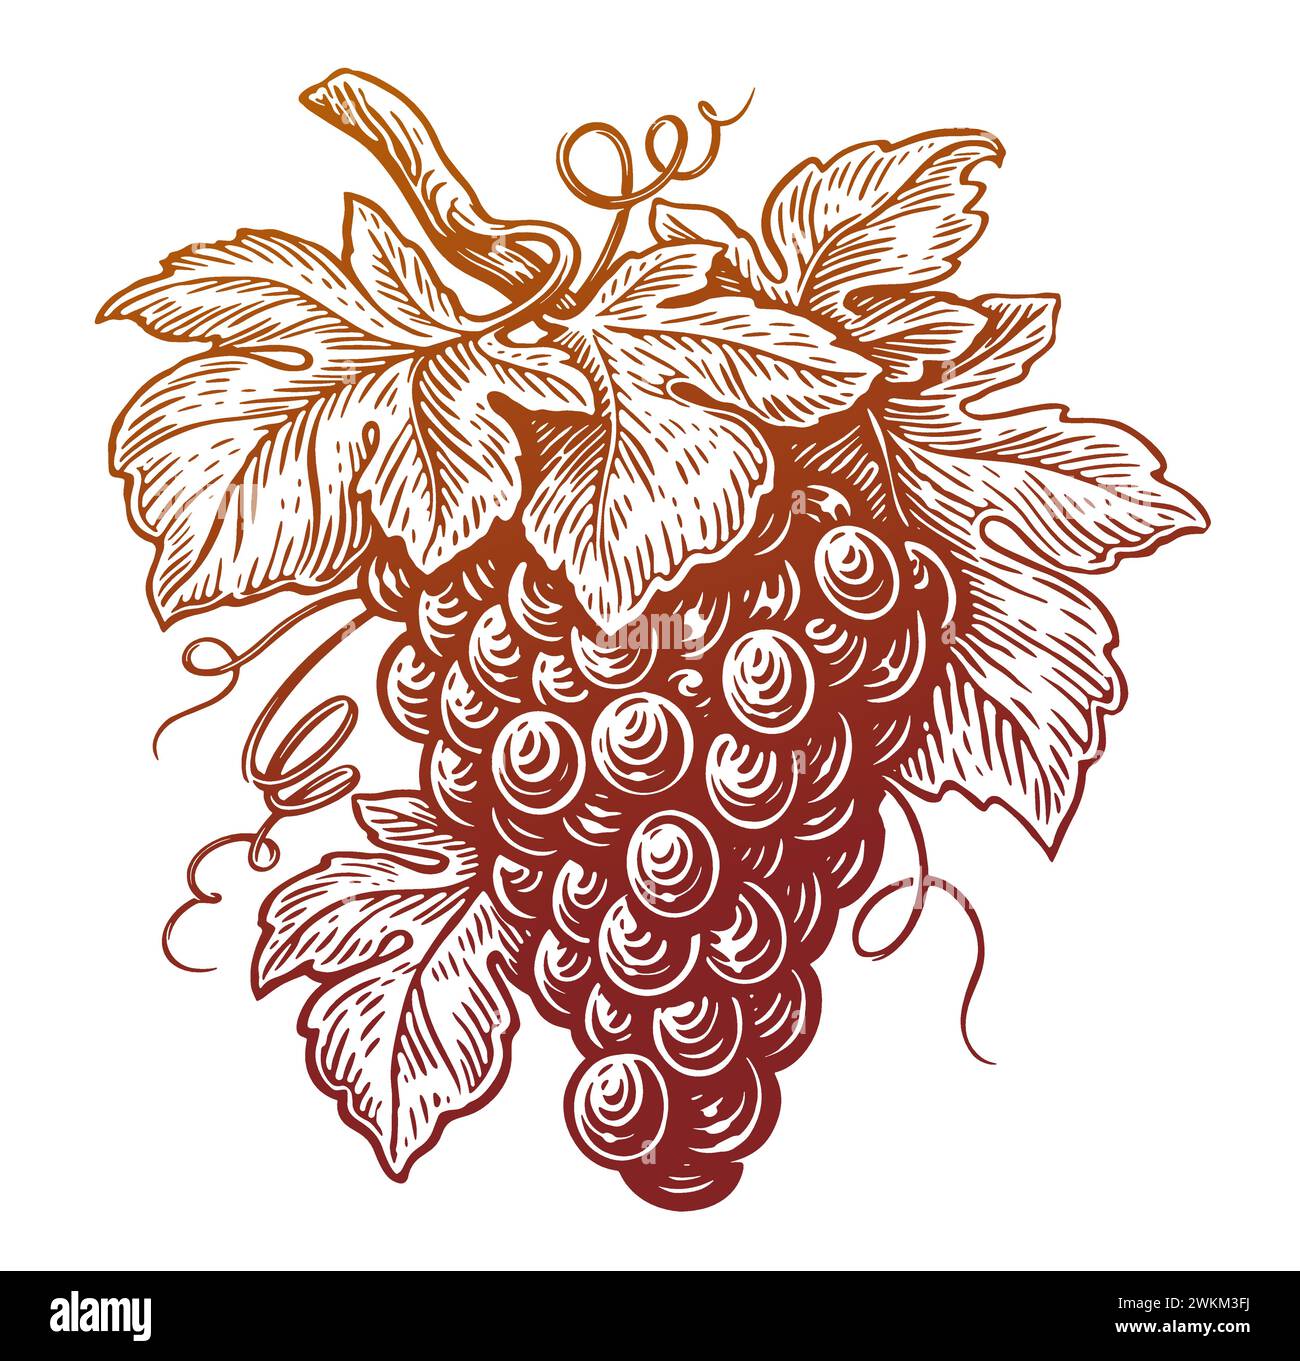 Ramo d'uva con foglie e bacche. Disegno a mano di vite in stile incisione vintage. Illustrazione del vettore di schizzo Illustrazione Vettoriale